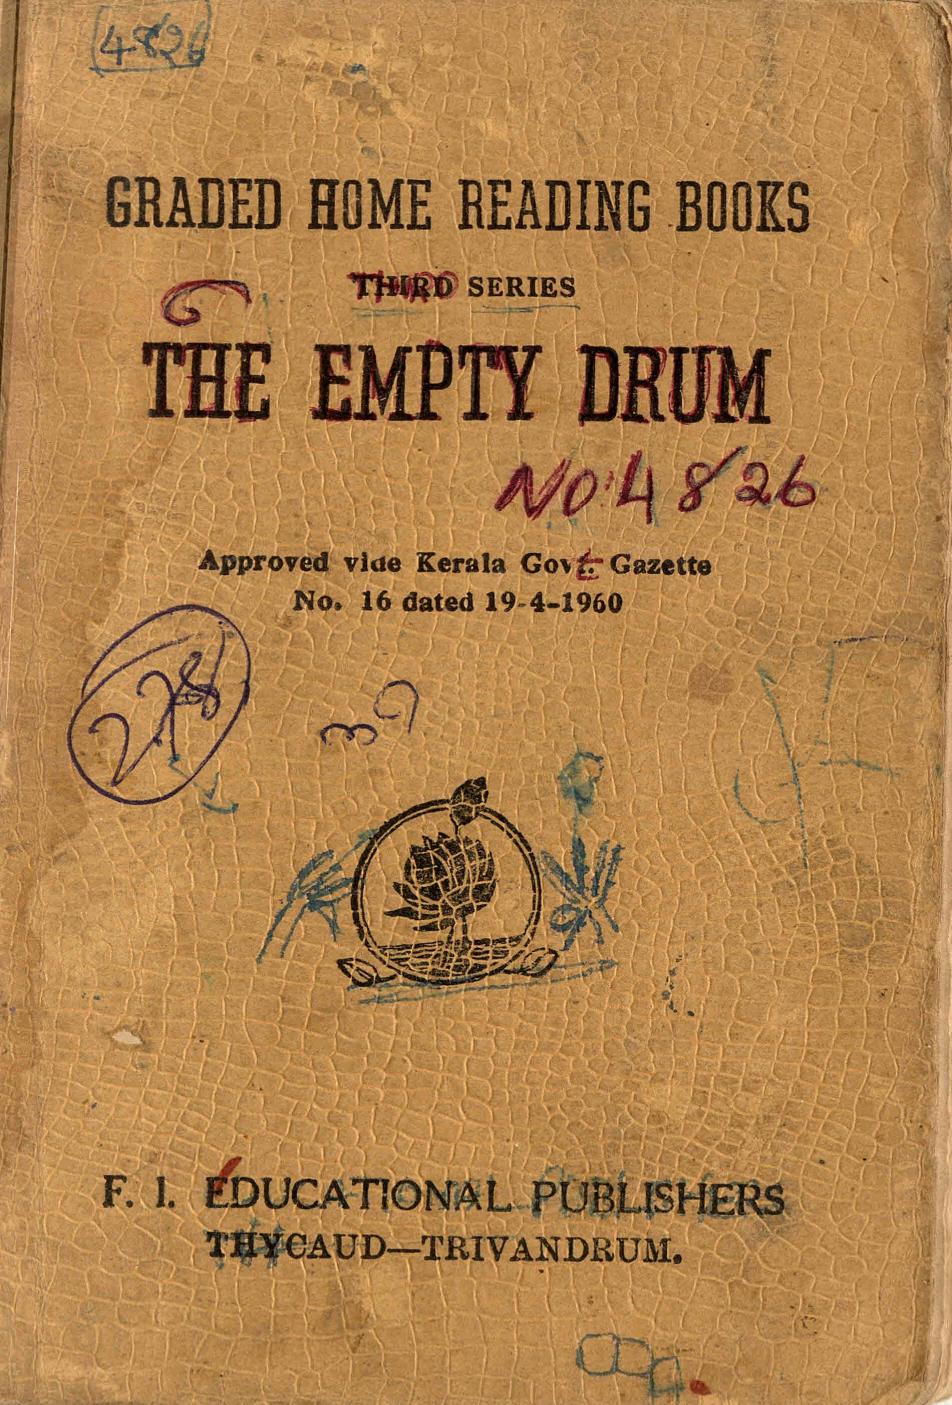 1963 - The Empty Drum - Leo Tolstoy